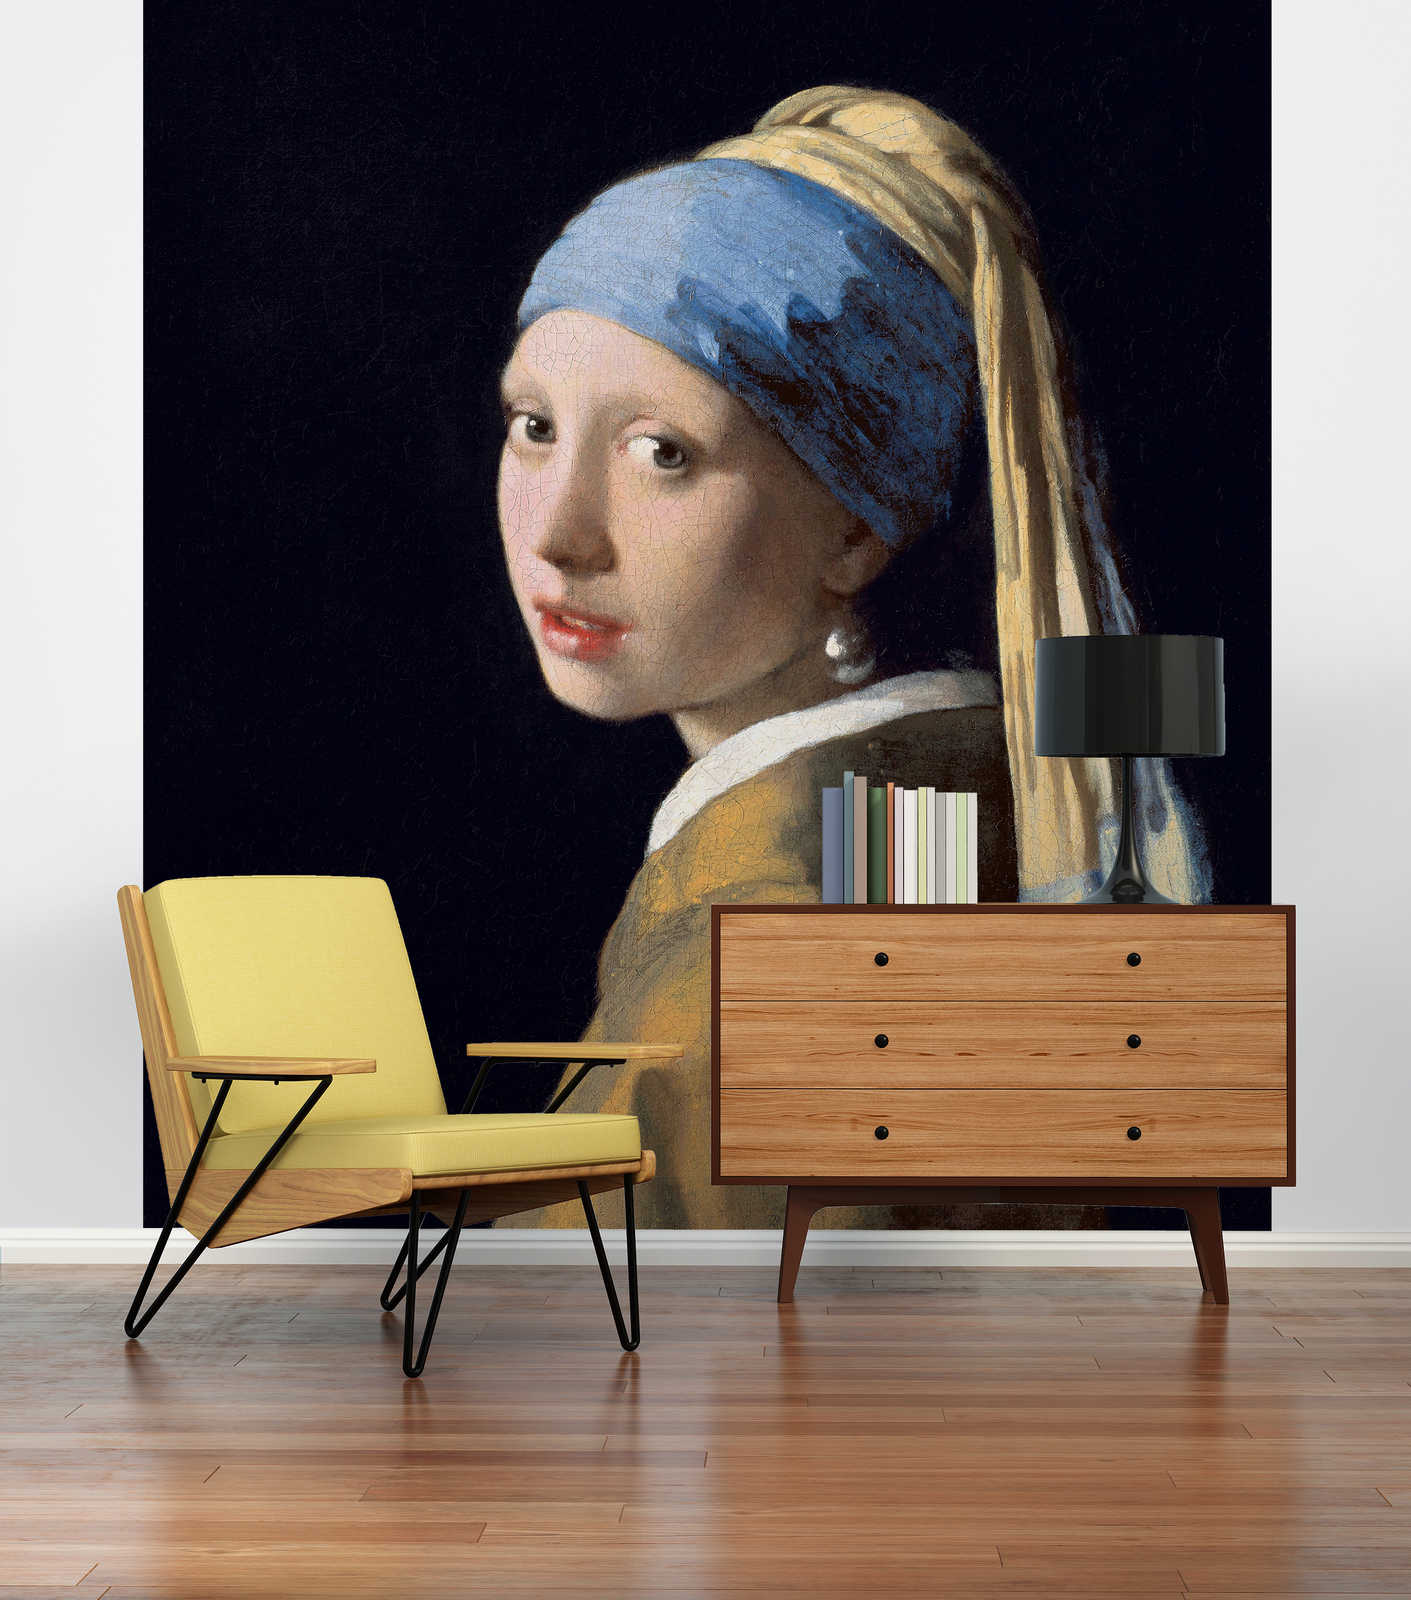             Het meisje met de parel" muurschildering van Jan Vermeer
        